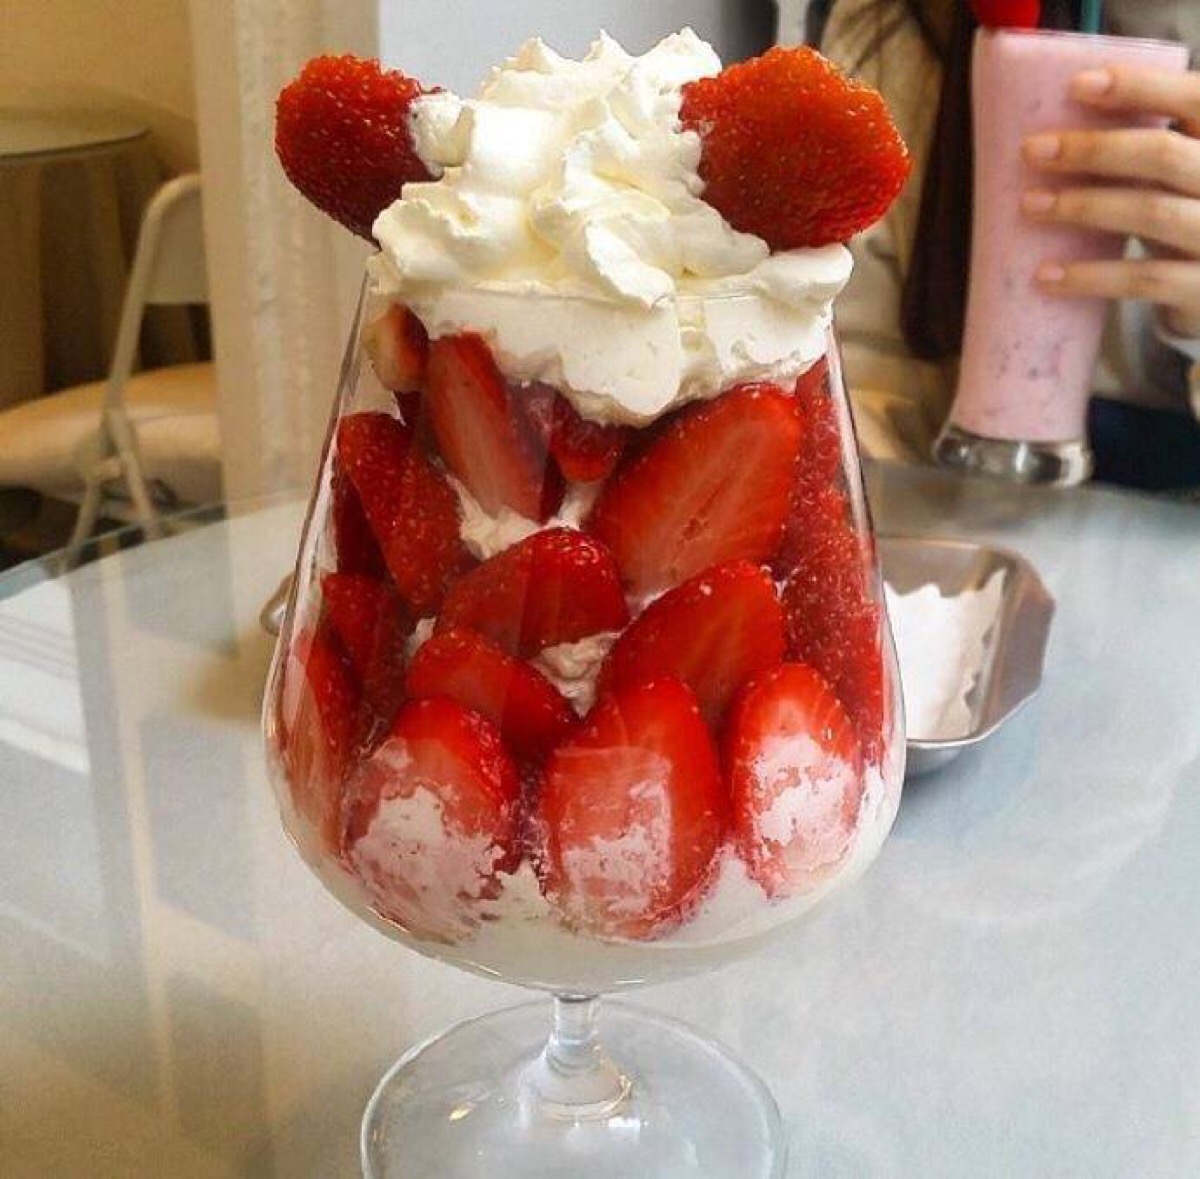 草莓奶油杯